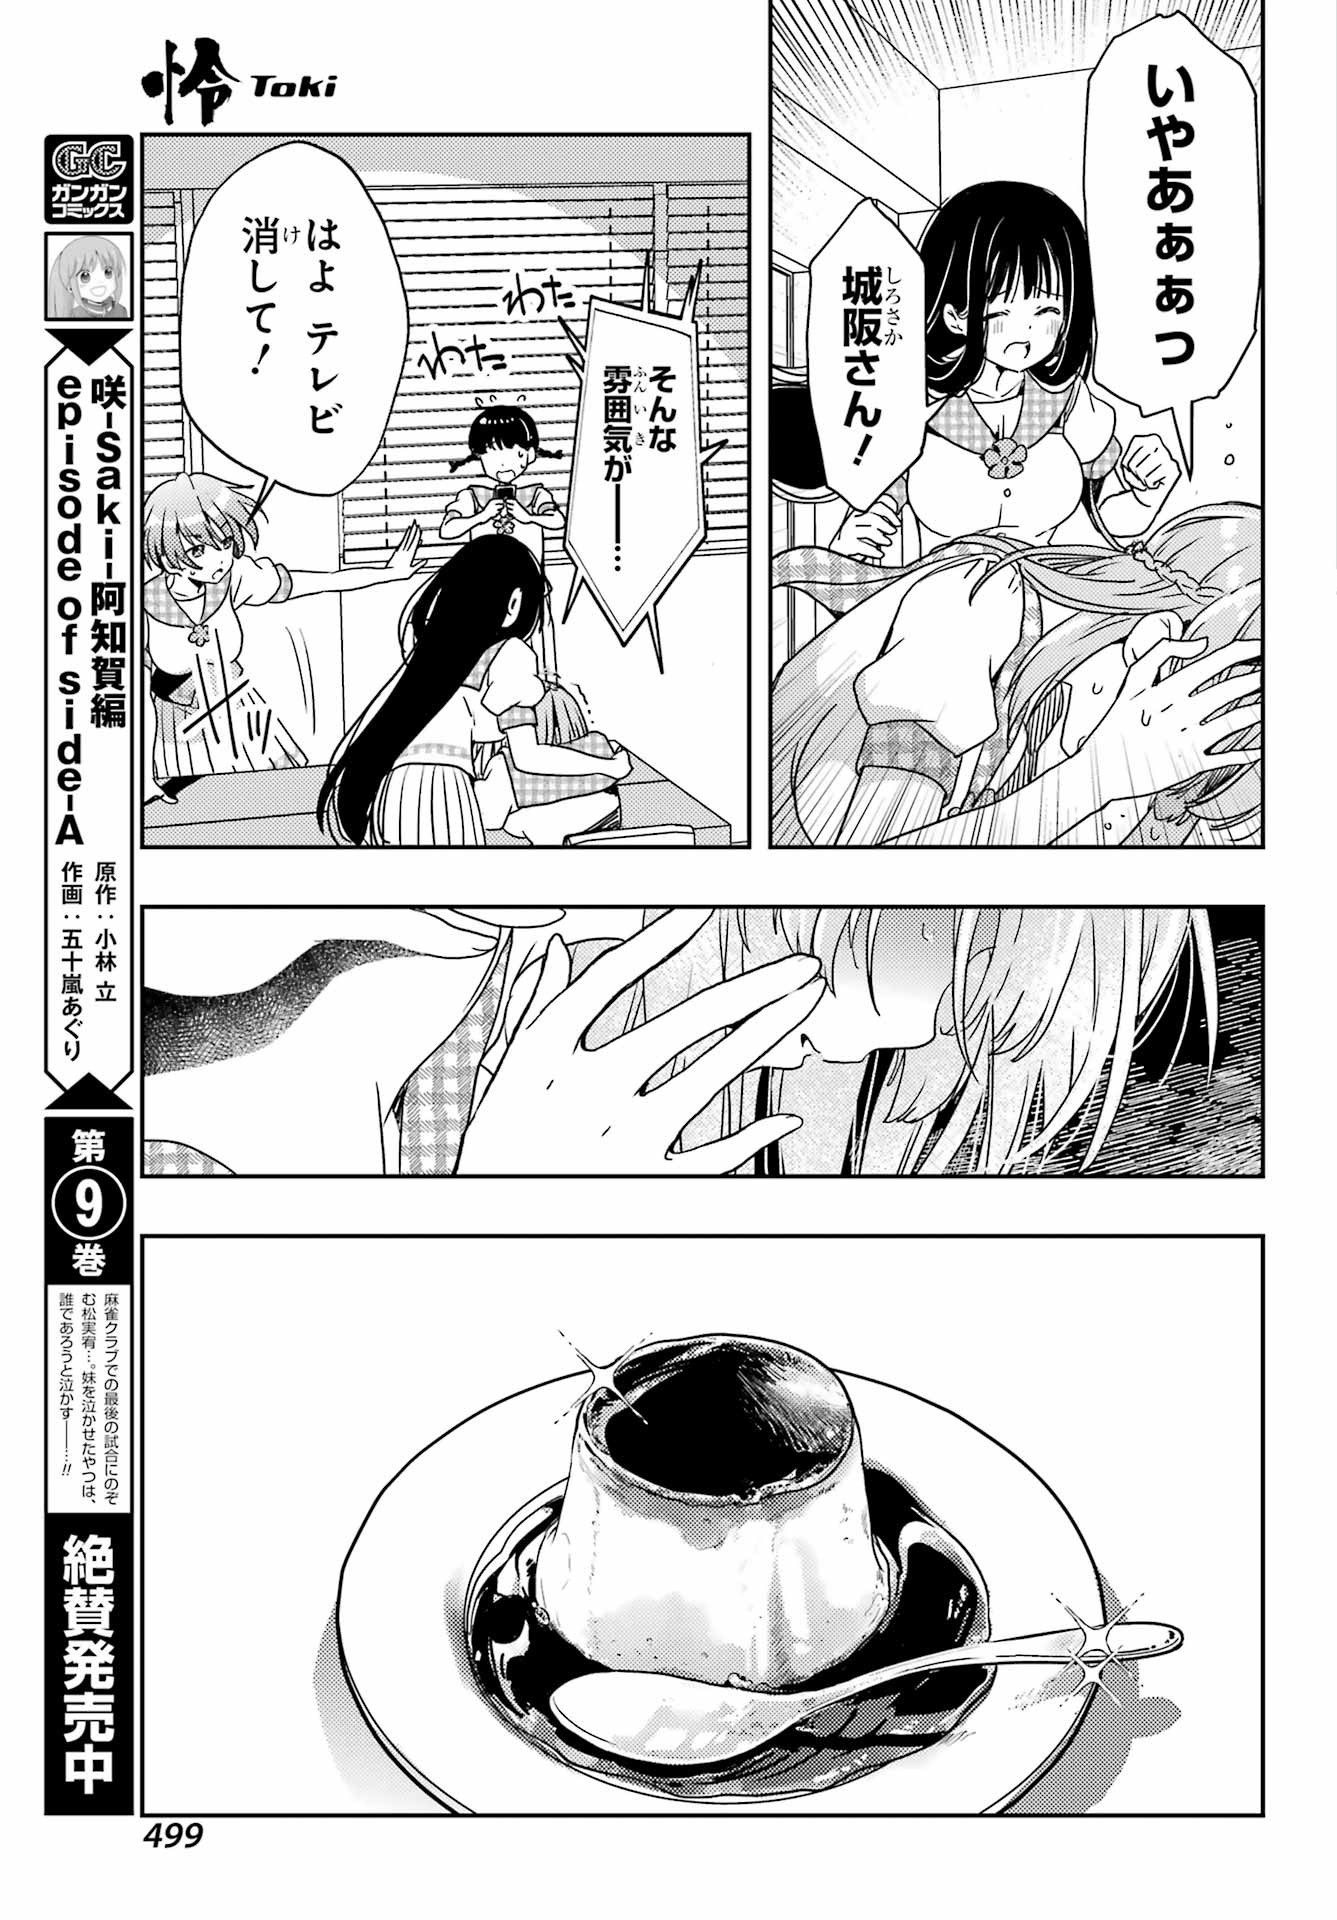 Toki (KOBAYASHI Ritz) - Chapter 068 - Page 9